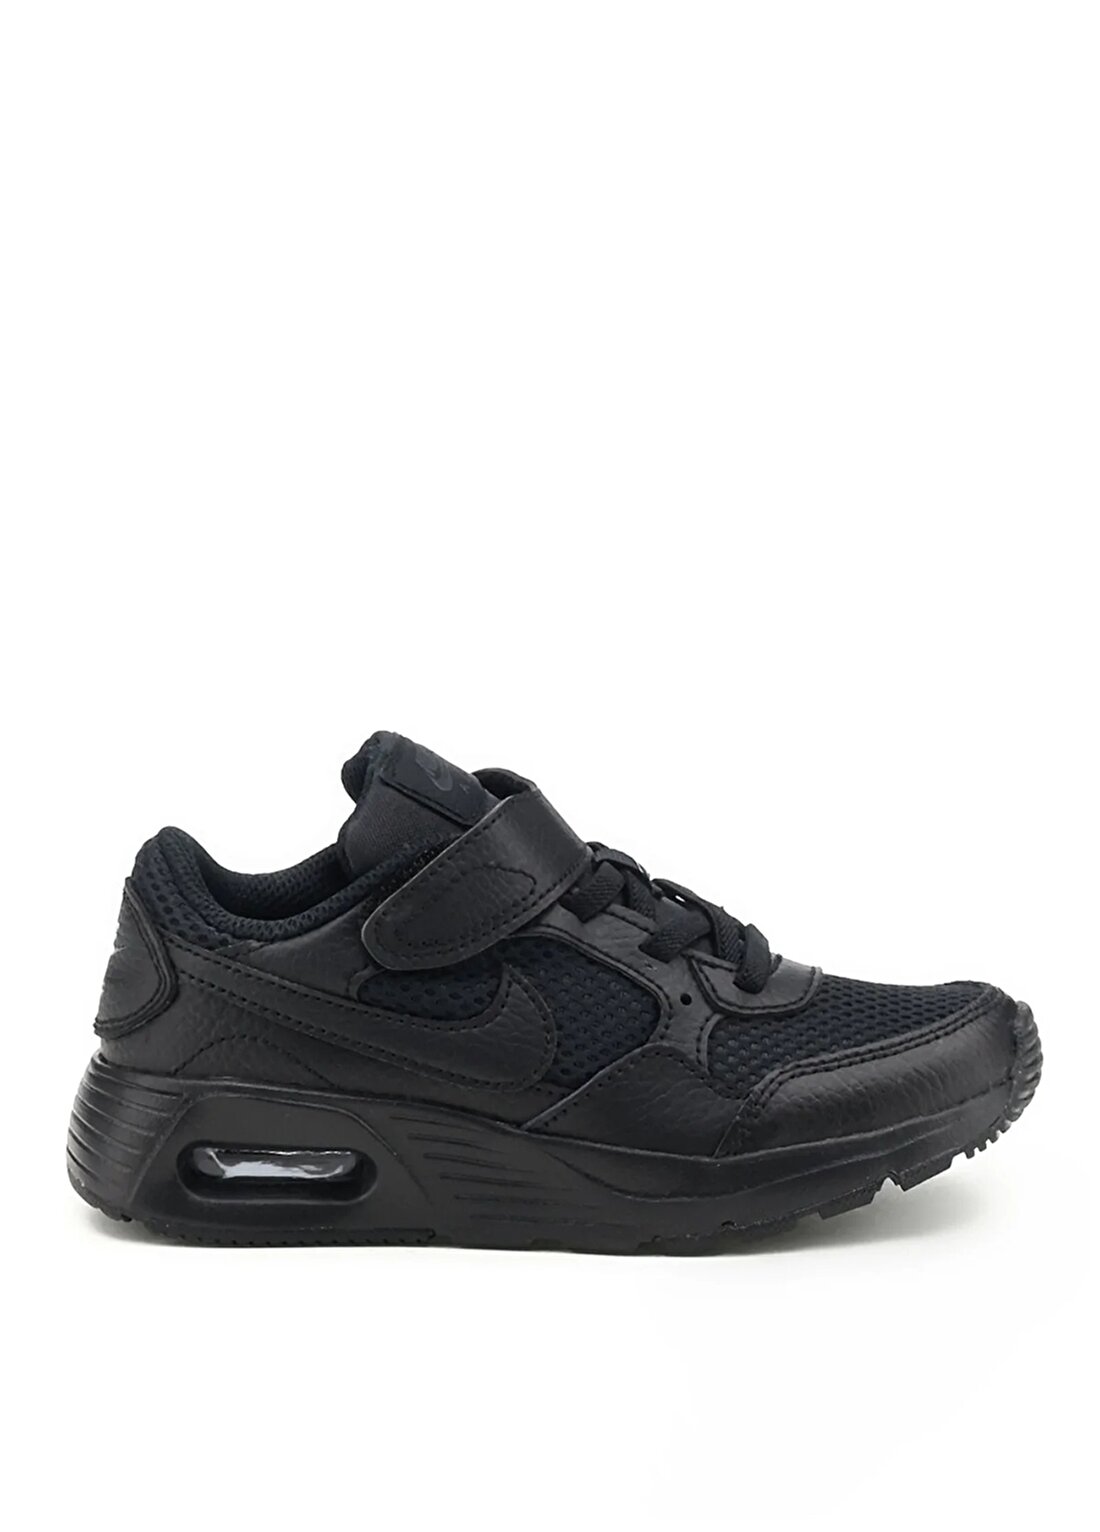 Nike Erkek Çocuk Yürüyüş Ayakkabısı CZ5356-003 NIKE AIR MAX SC PSV